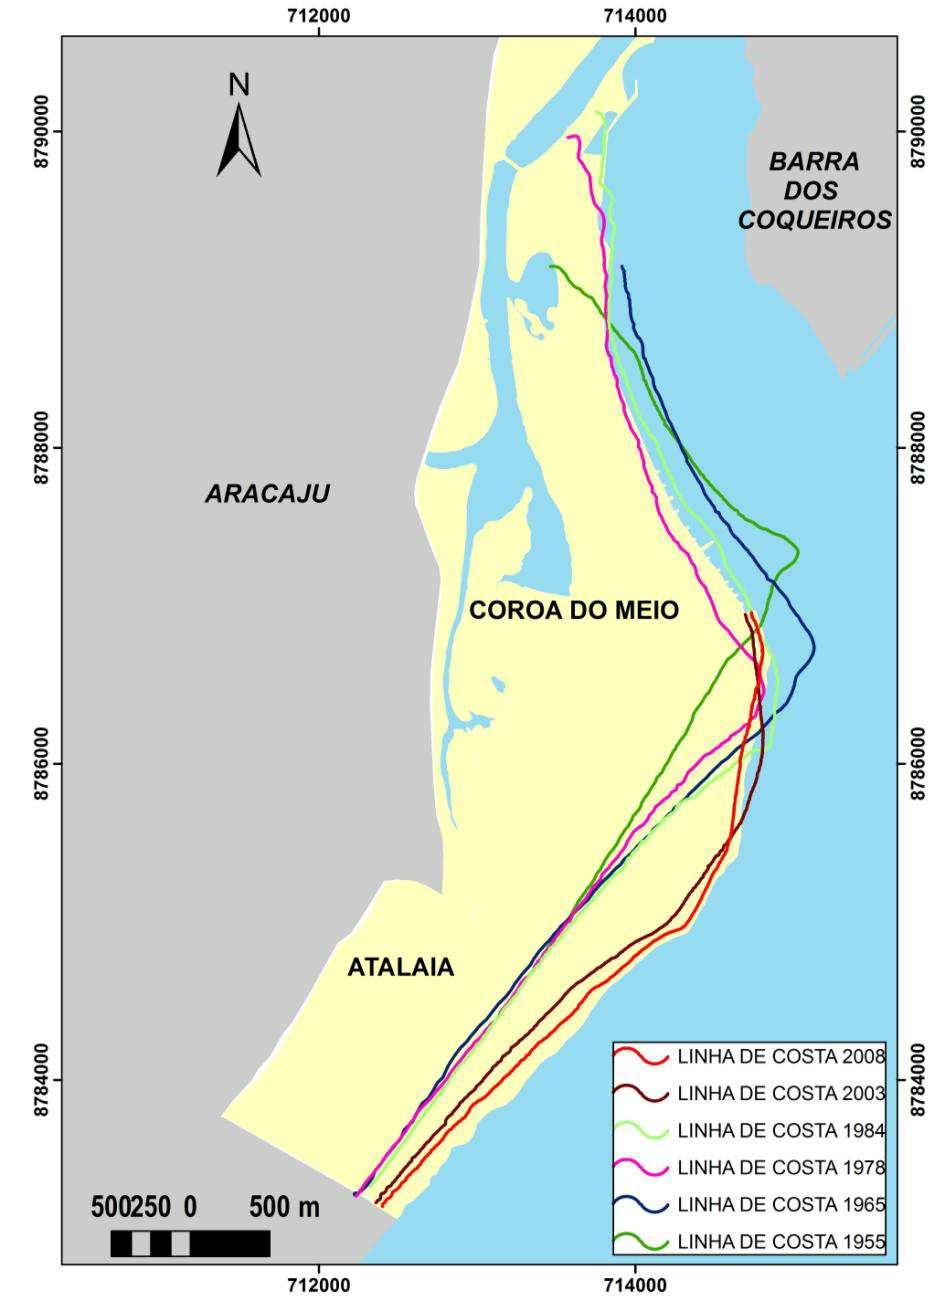 128 Figura 60 - Sobreposição das linhas de costa de 1955 a 2008.